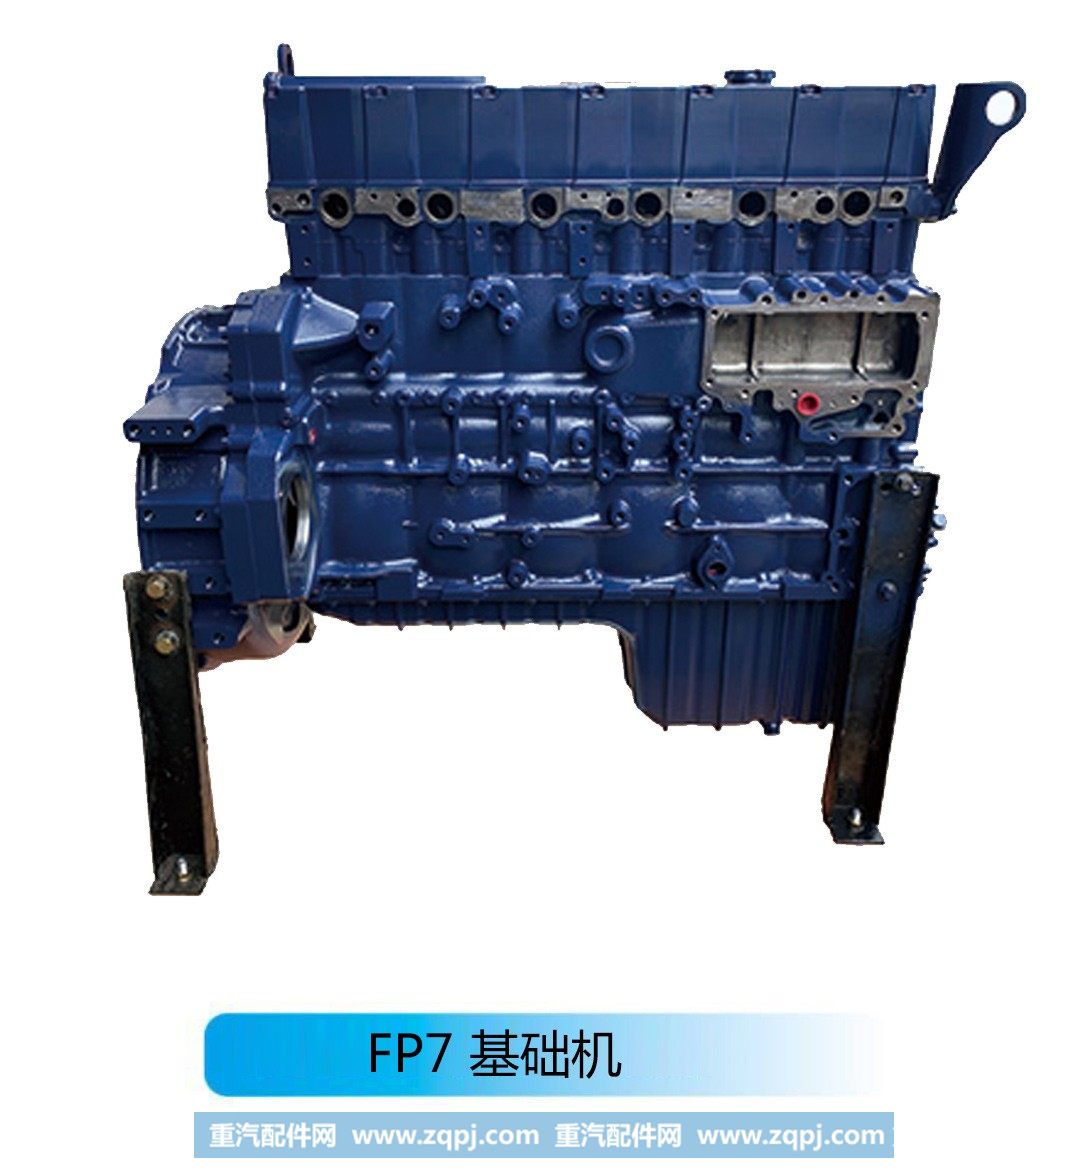 潍柴系列柴油发动机--FP7 基础机【法泽尔发动机】/